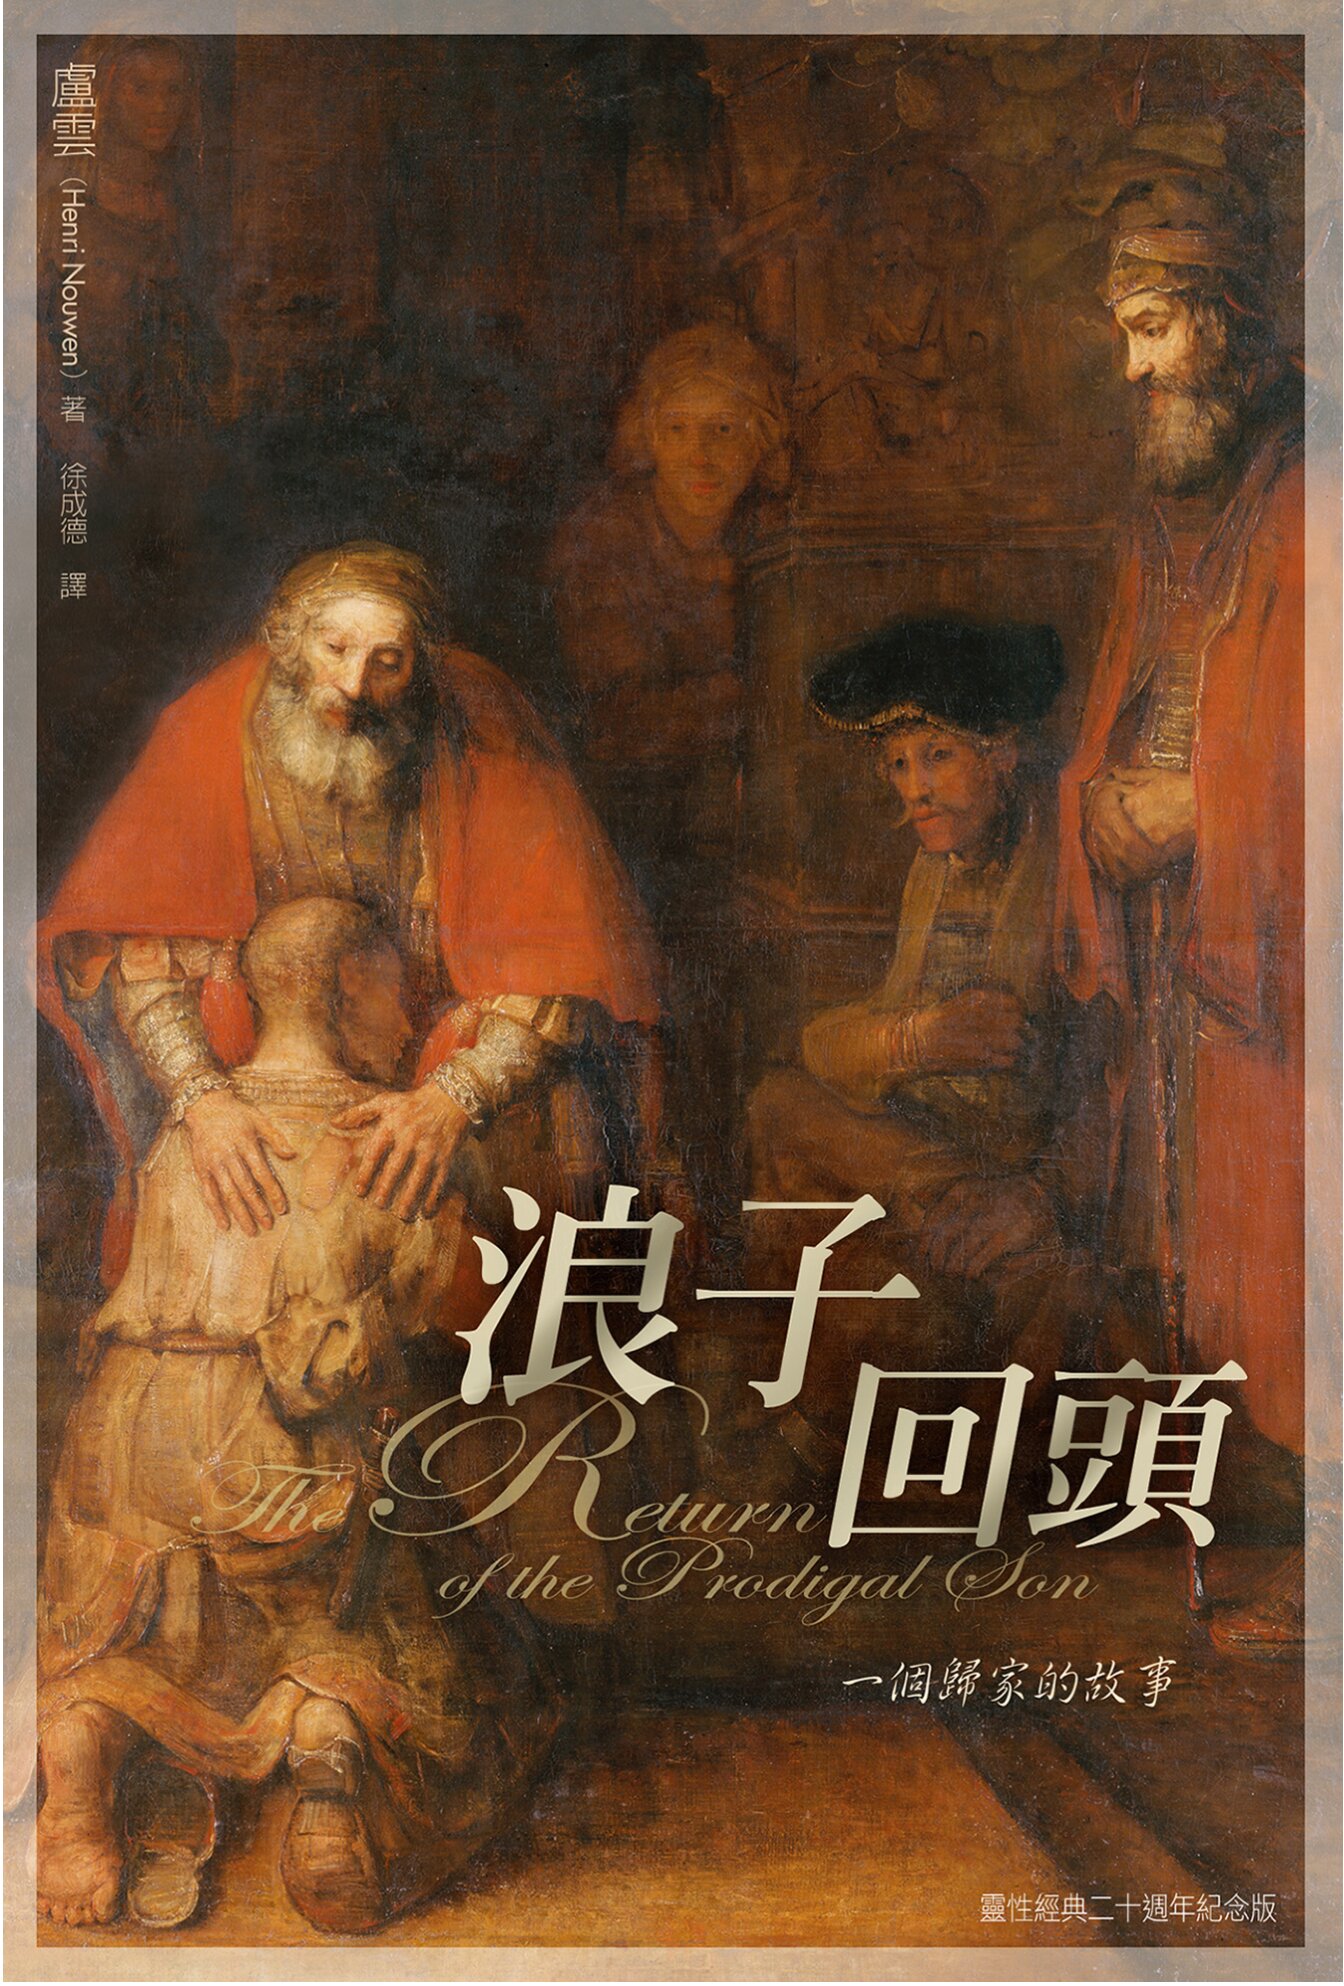 浪子回頭——一個歸家的故事 (繁體) The Return of the Prodigal Son: A Story of Homecoming (Traditional Chinese)